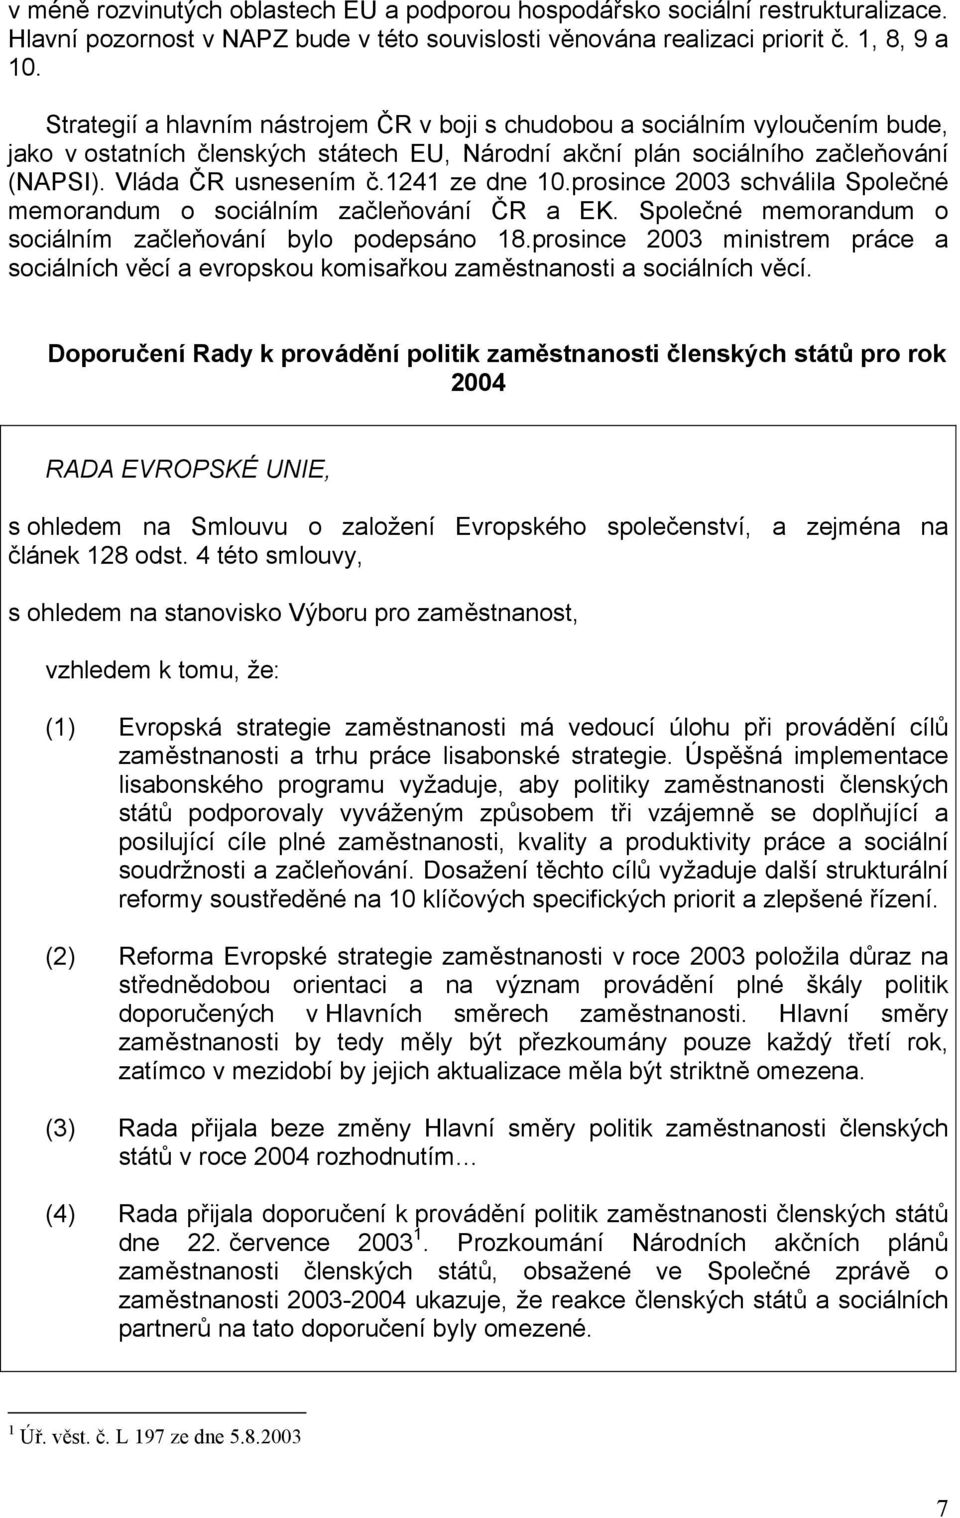 1241 ze dne 10.prosince 2003 schválila Společné memorandum o sociálním začleňování ČR a EK. Společné memorandum o sociálním začleňování bylo podepsáno 18.